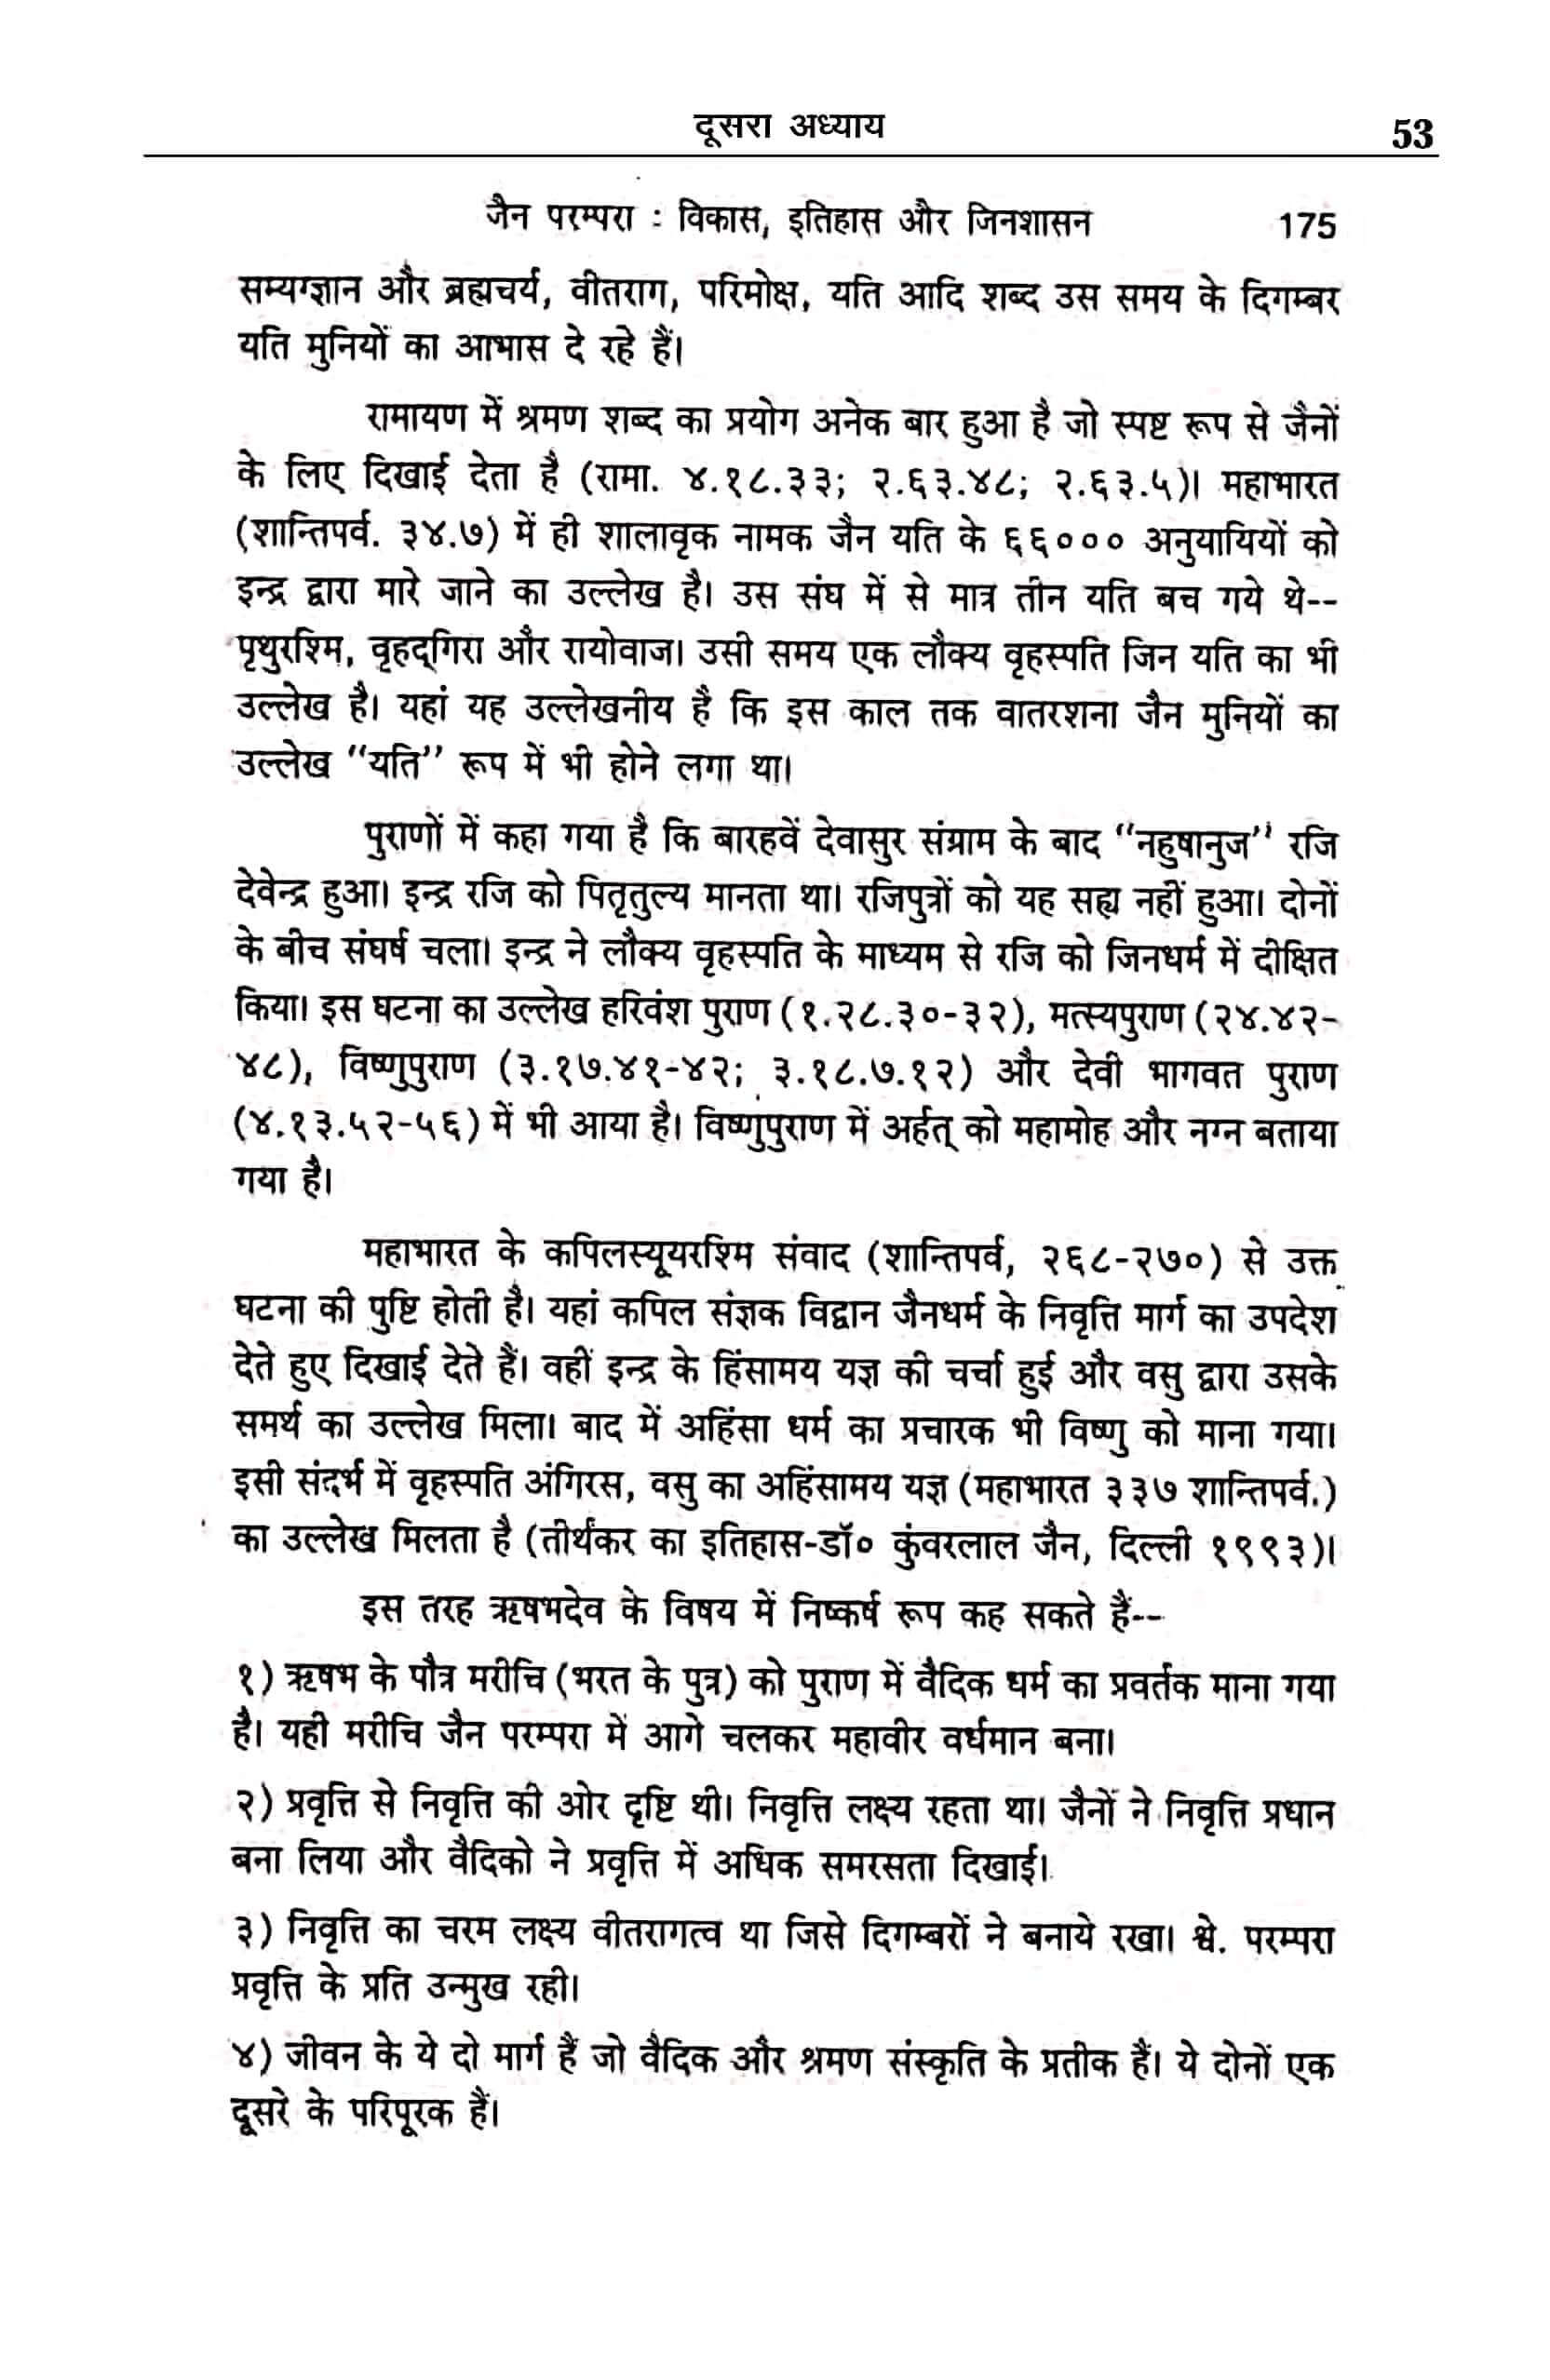 hindu-saheban-nahin-samjhe-gita-ved-puran-page-53